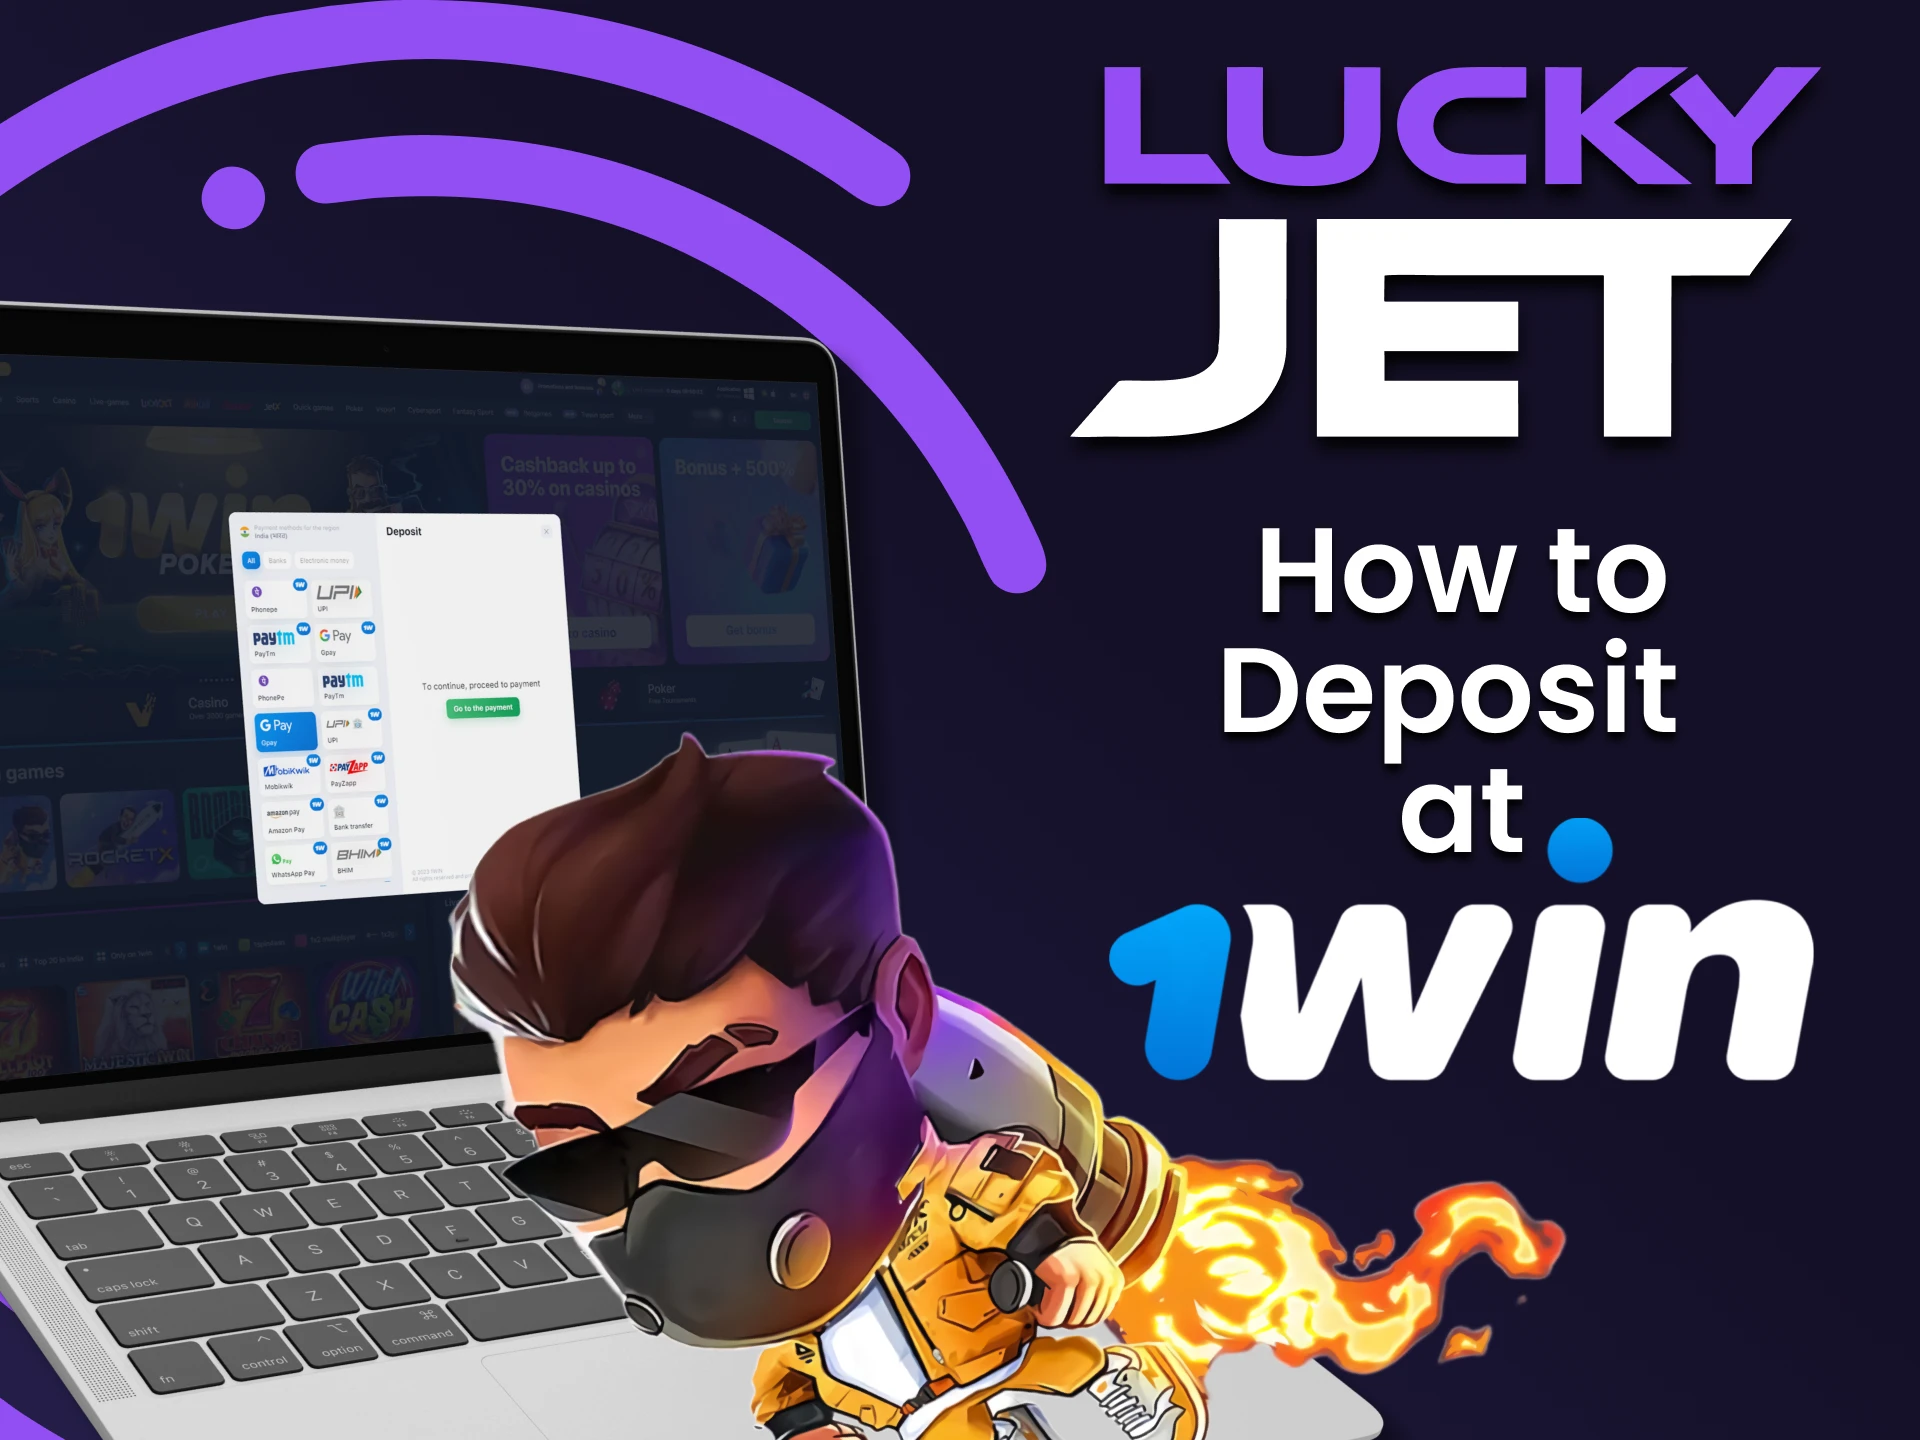 Deposite fondos en su cuenta fácilmente en 1Win para apostar en Lucky Jet.